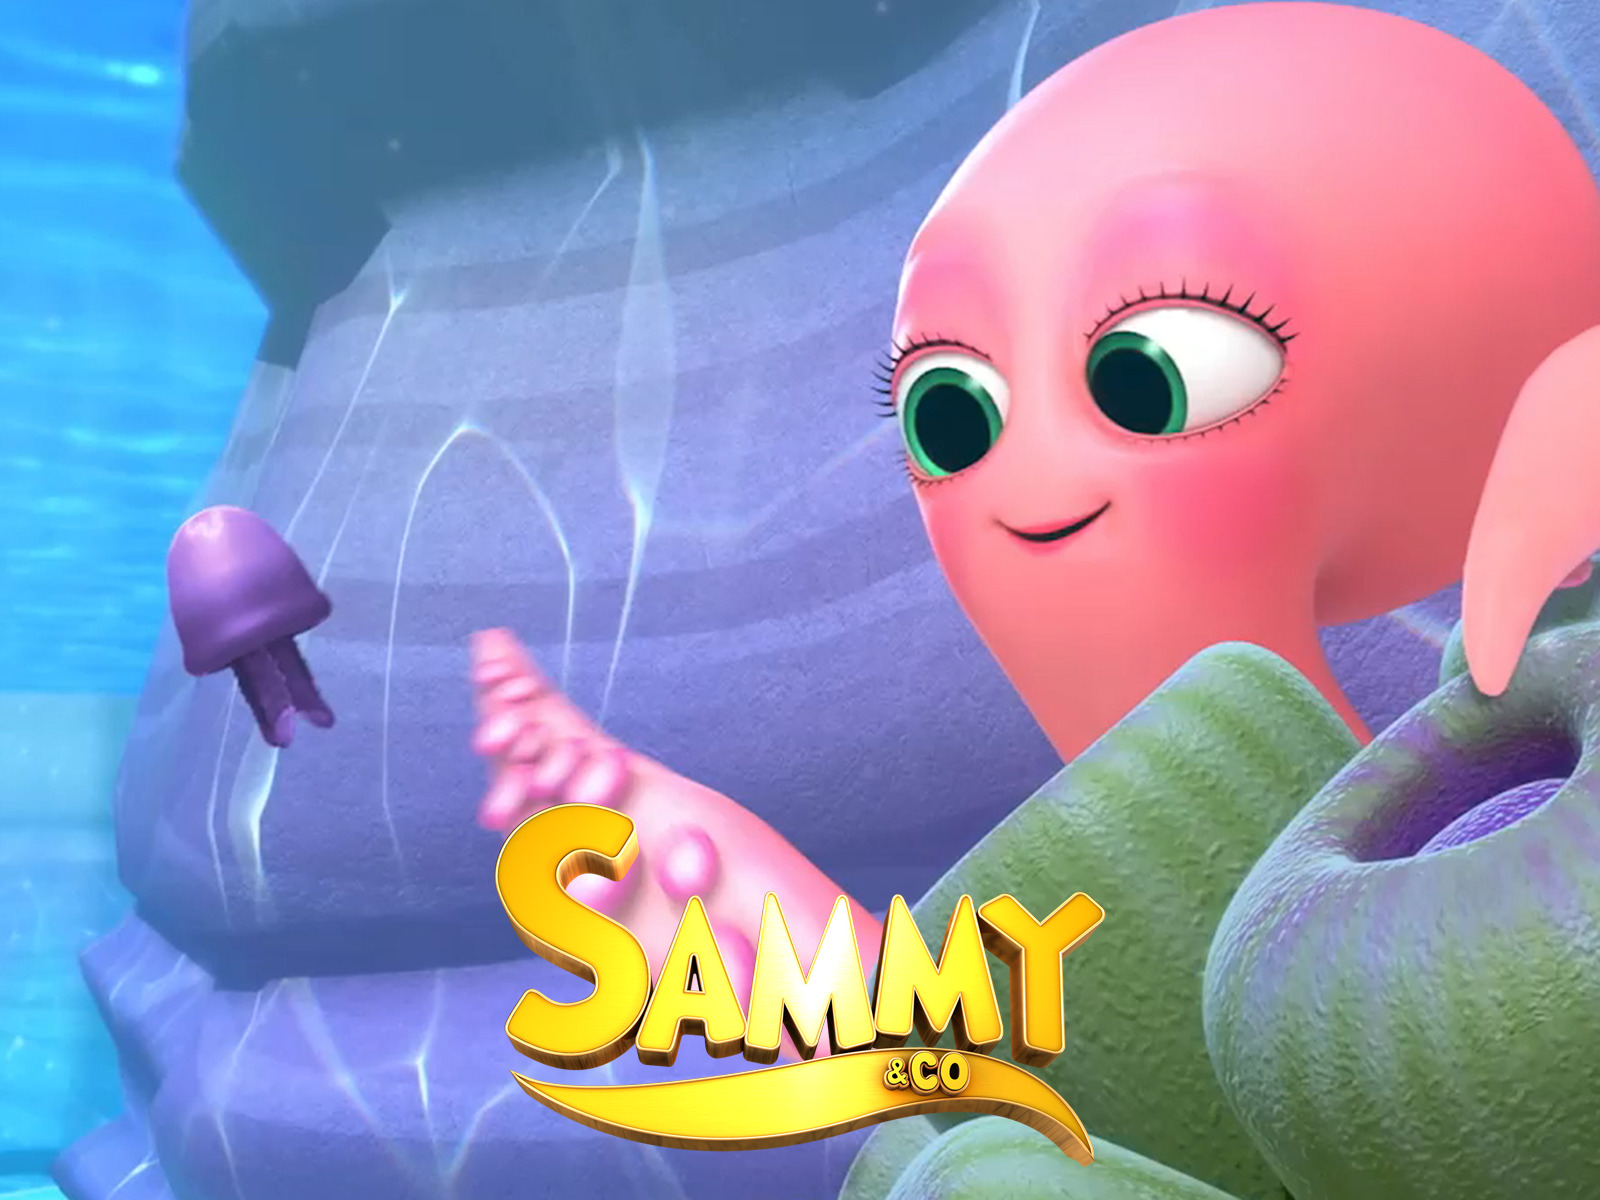 Prime Video: Sammy & Co